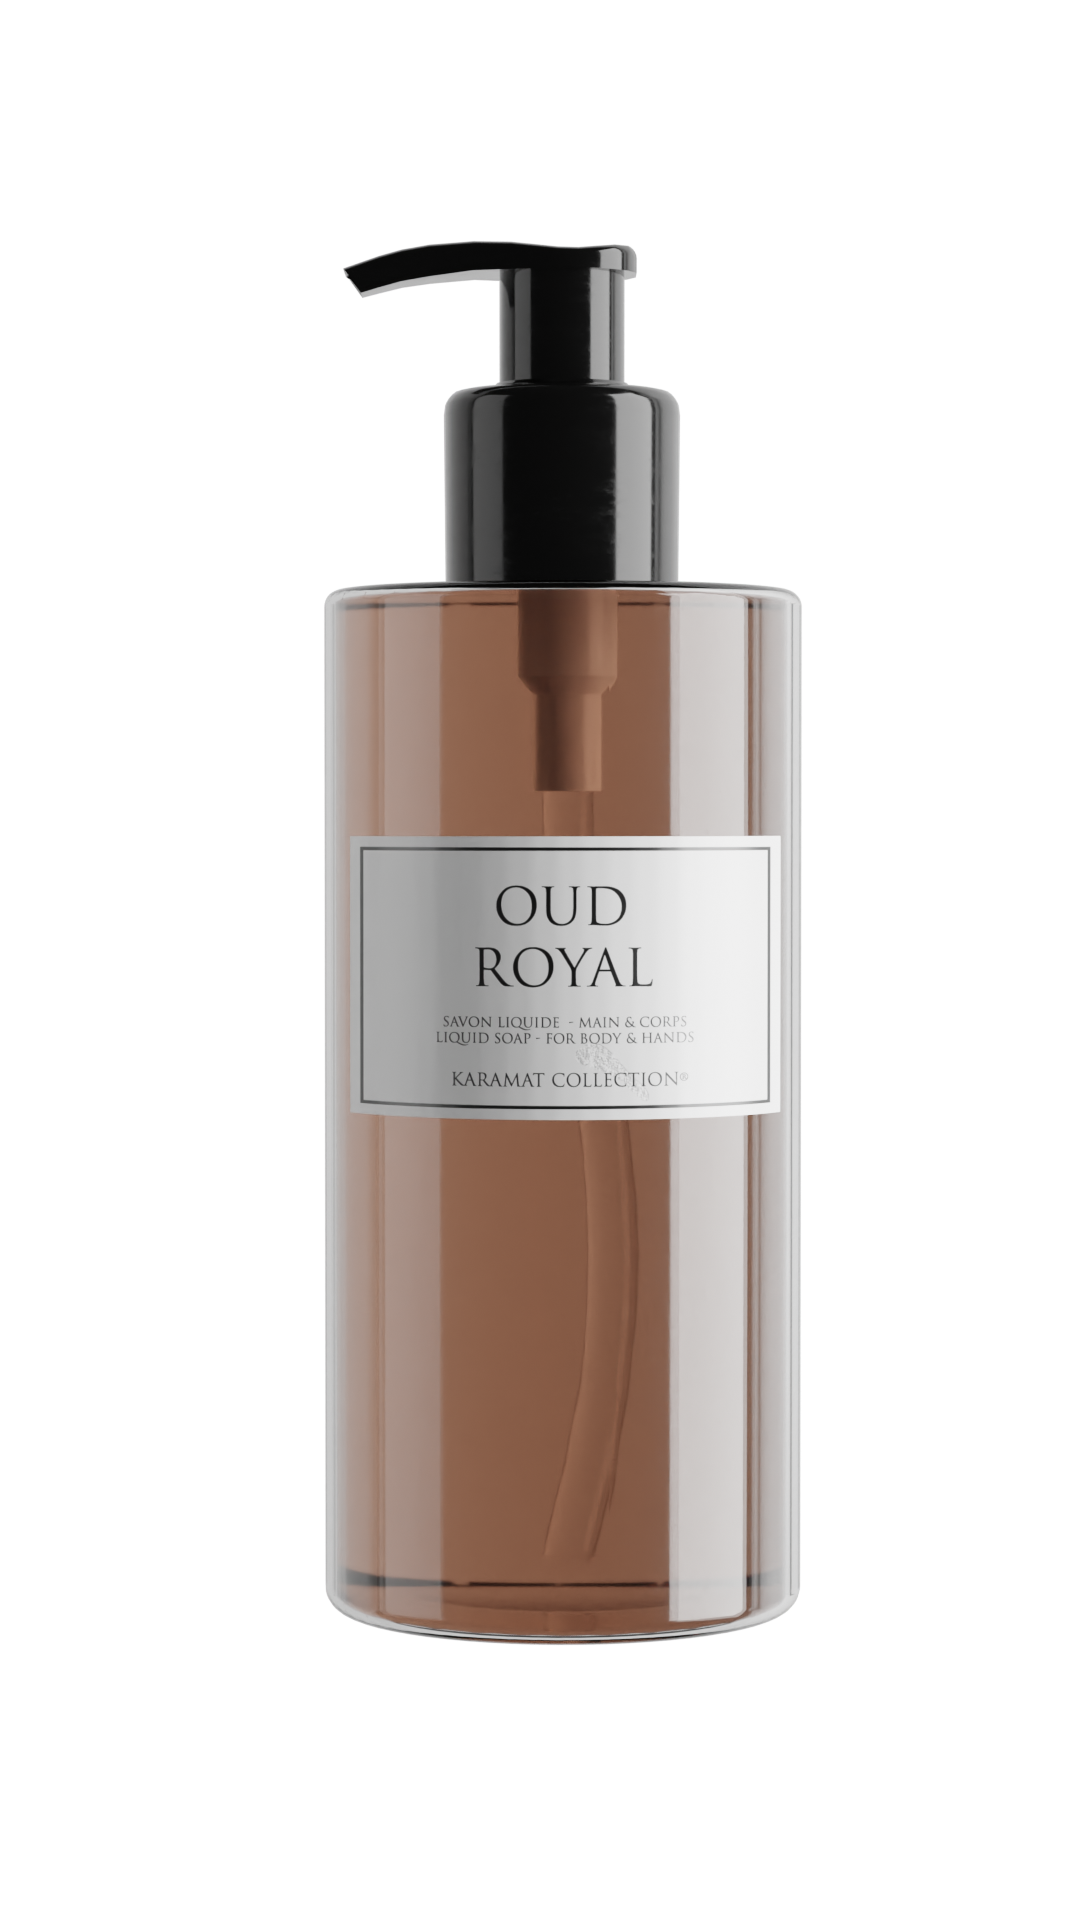 Parfum Maison Oud Royal - Karamat Collection - Les Collections Privées